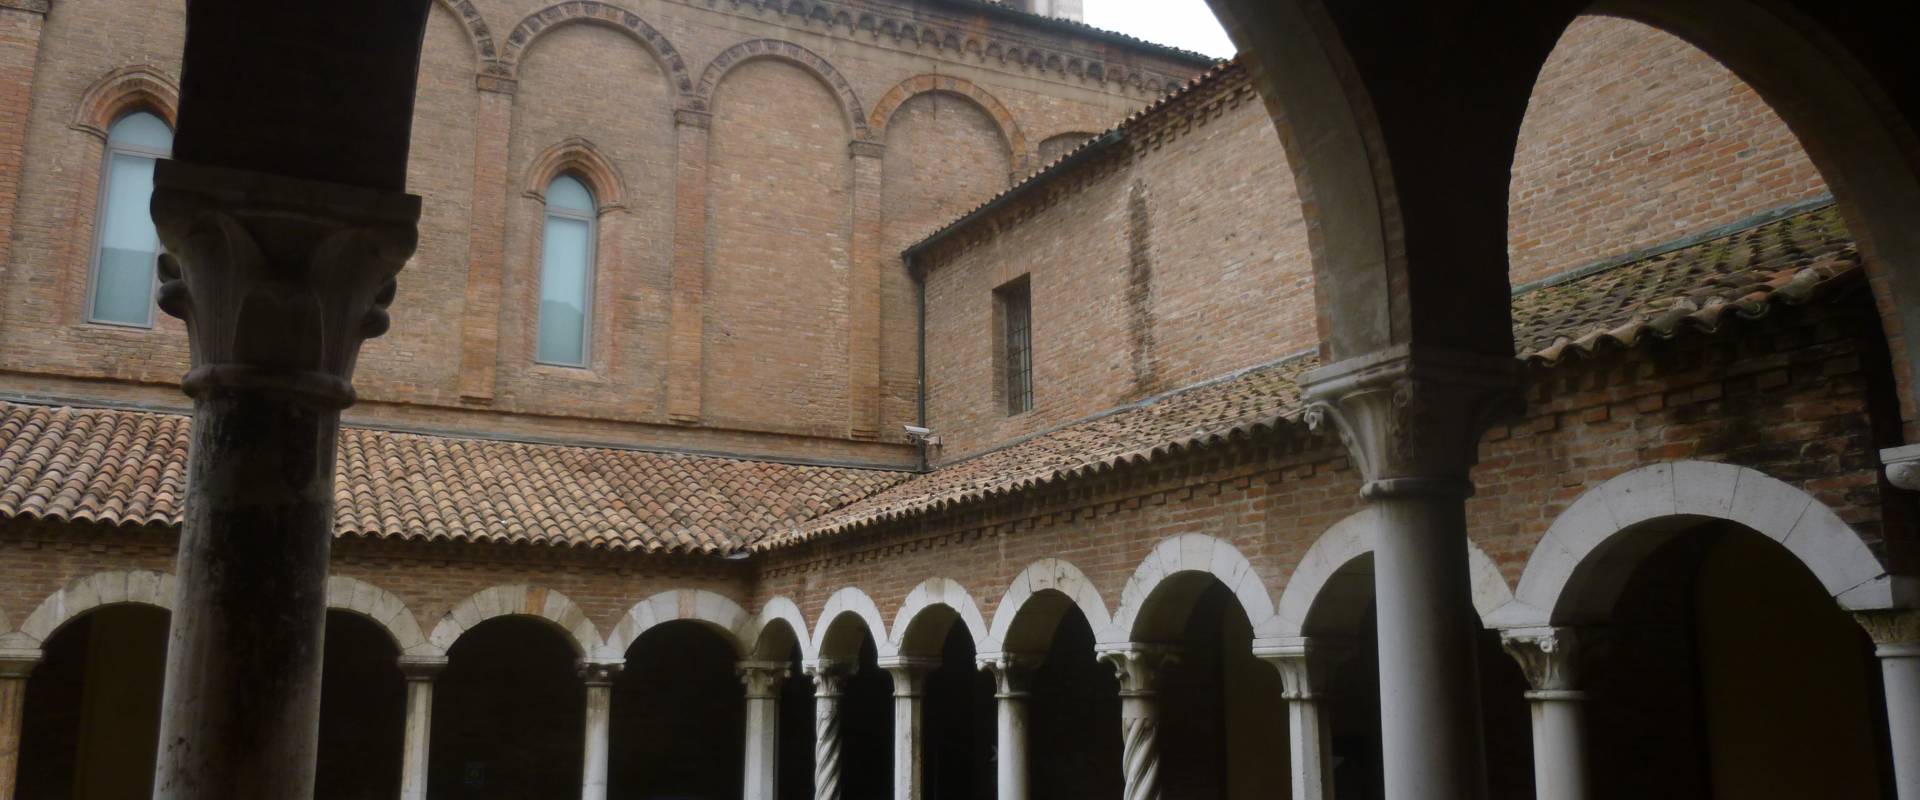 Museo della Cattedrale - Ferrara 7 foto di Diego Baglieri